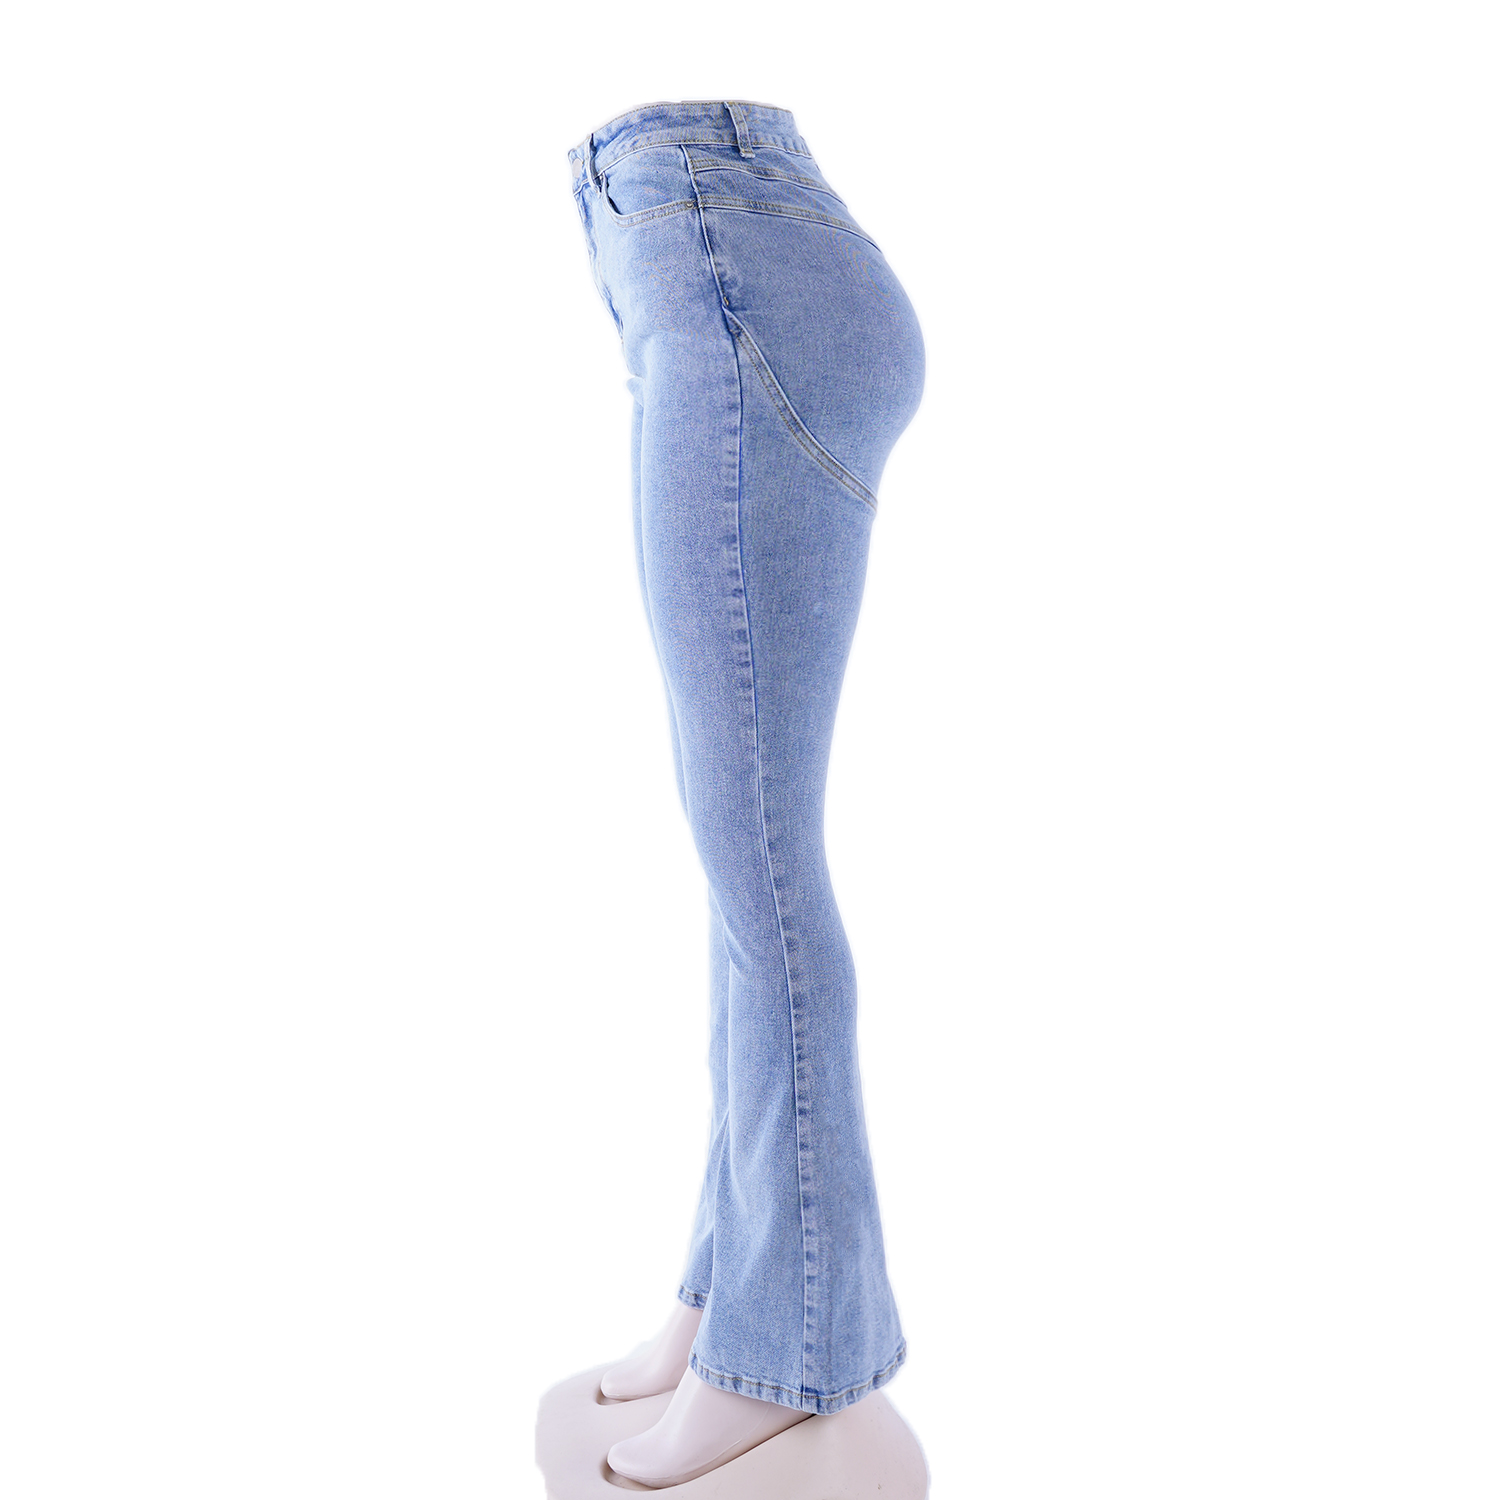 SKYKINGDOM new arrival jeans high waist light blue boot cut denim women jeans